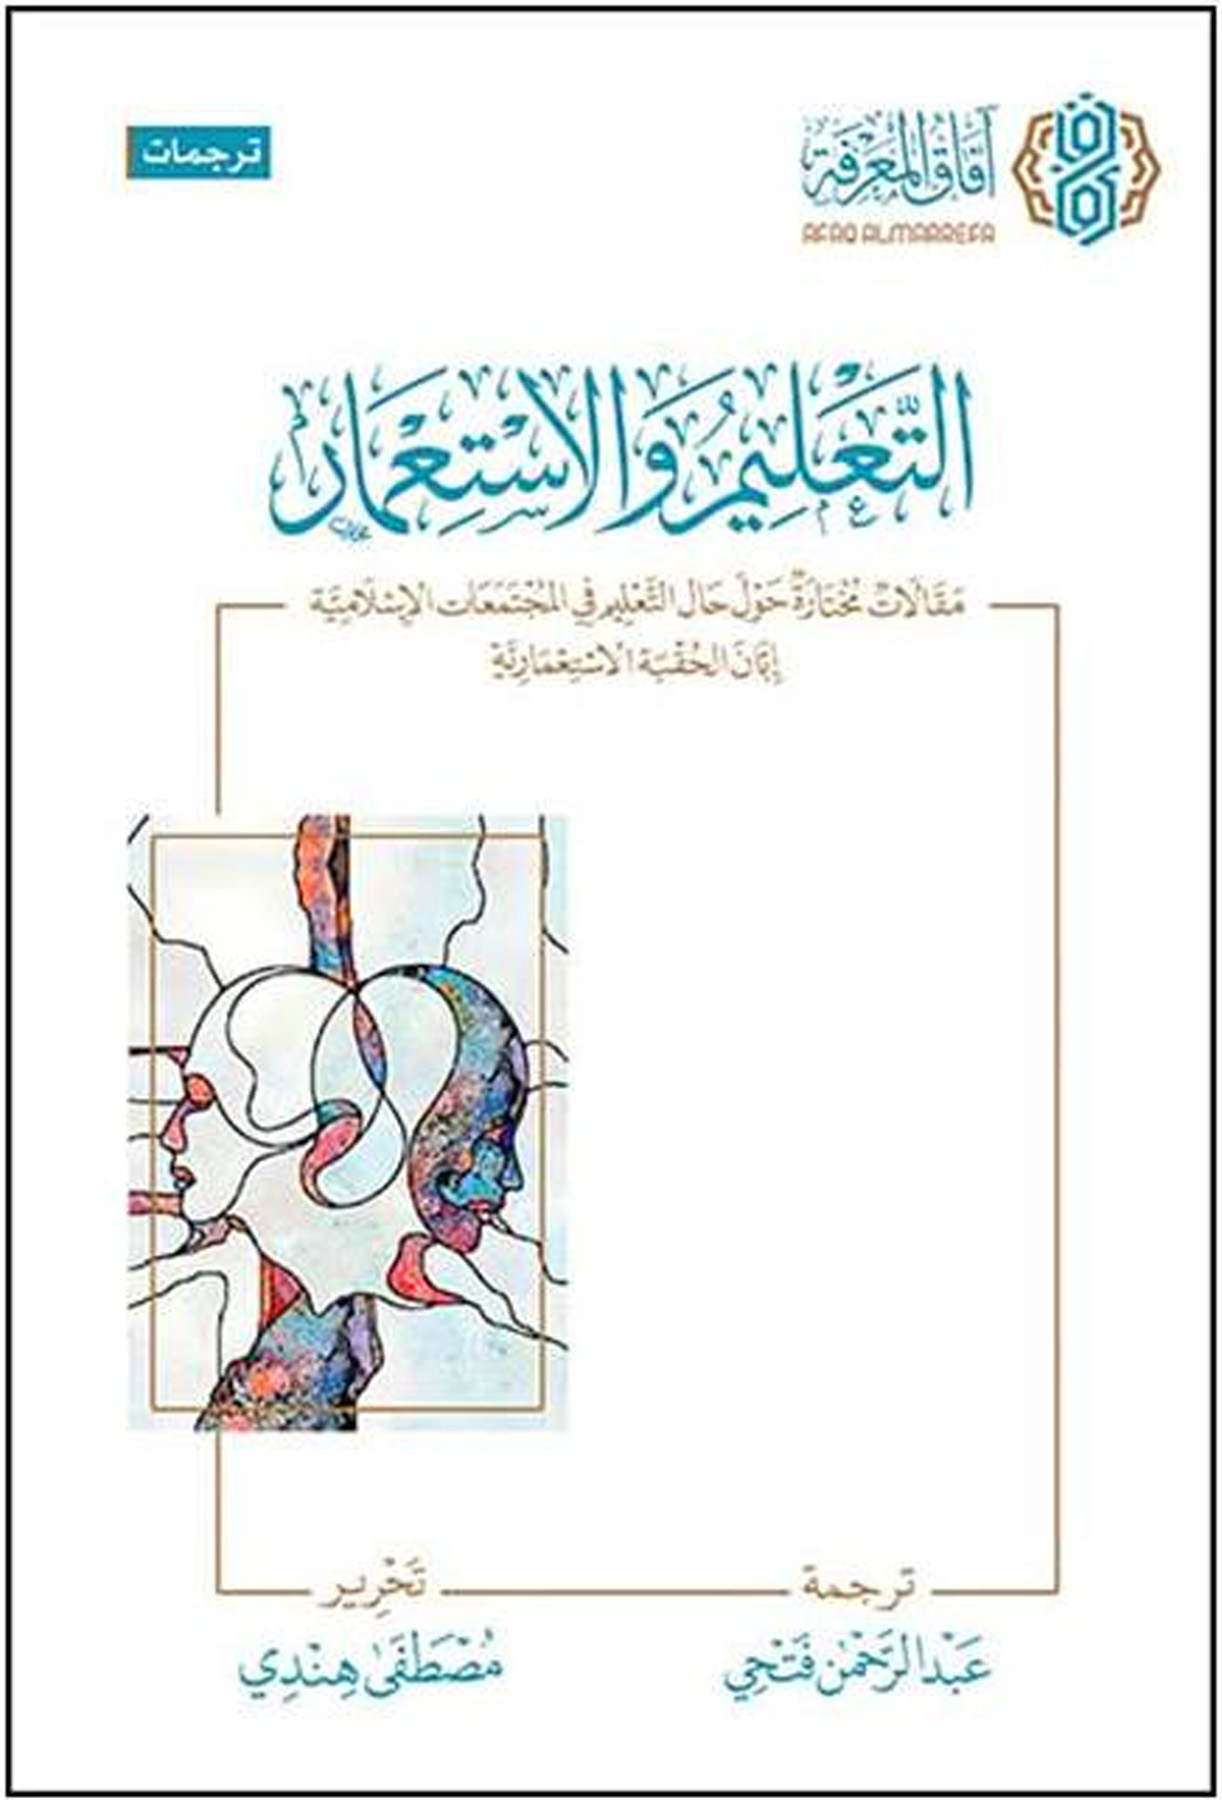 التعليم والاستعمار مقالات مختار حول حال التعليم في المجتمعات الإسلامية إبان الحقبة الاستعمارية